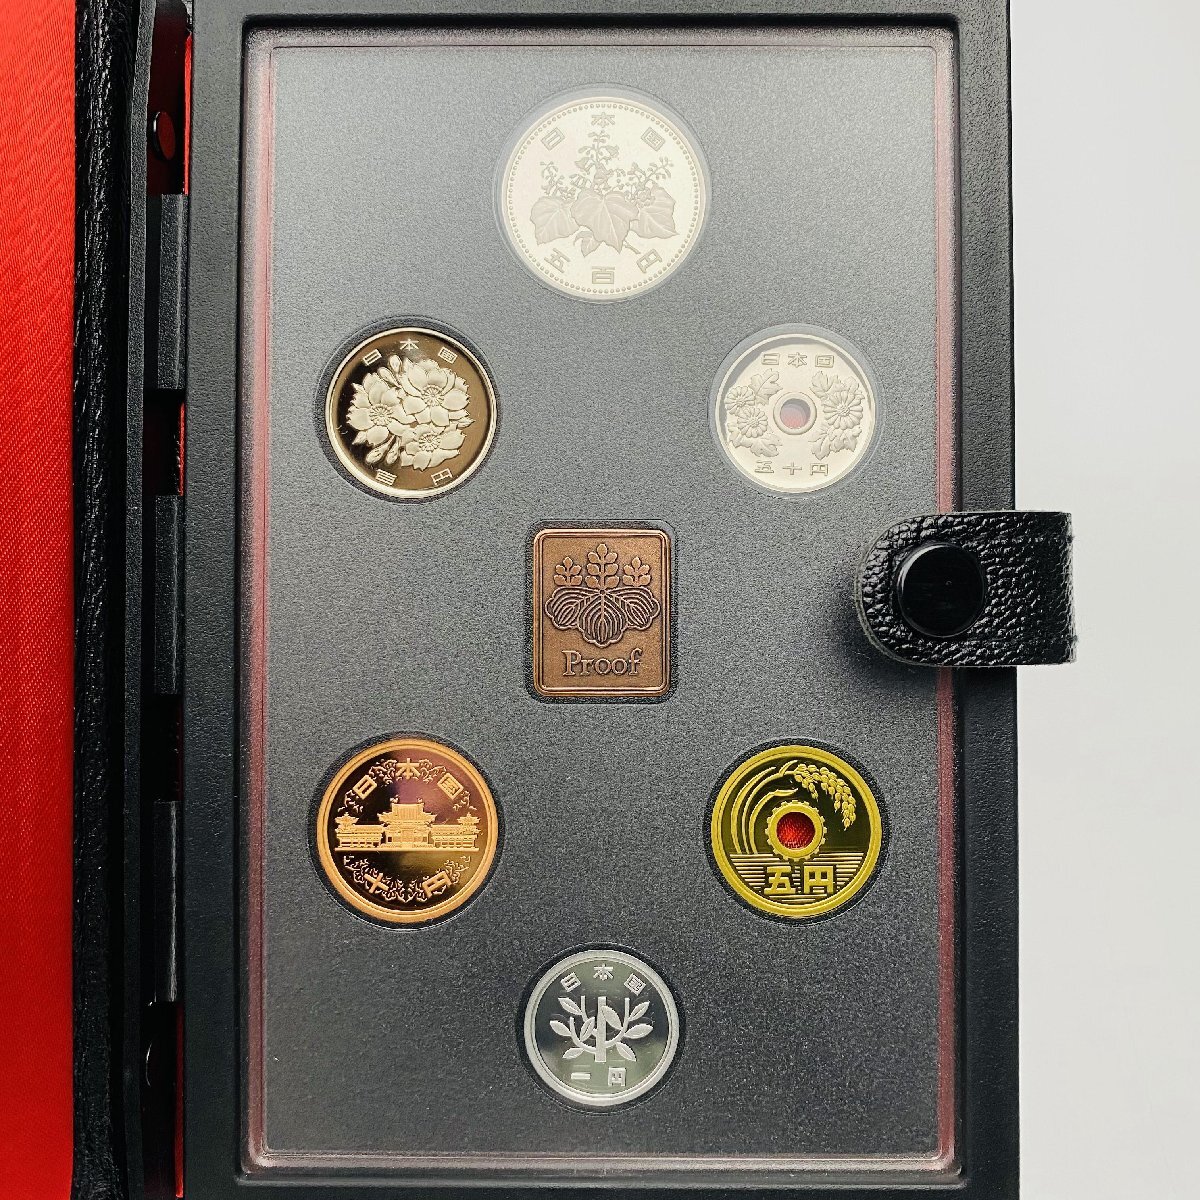 1987年 昭和62年 通常プルーフ貨幣セット 額面666円 年銘板有 全揃い 記念硬貨 記念貨幣 貨幣組合 日本円 限定貨幣 コレクション P1987の画像2